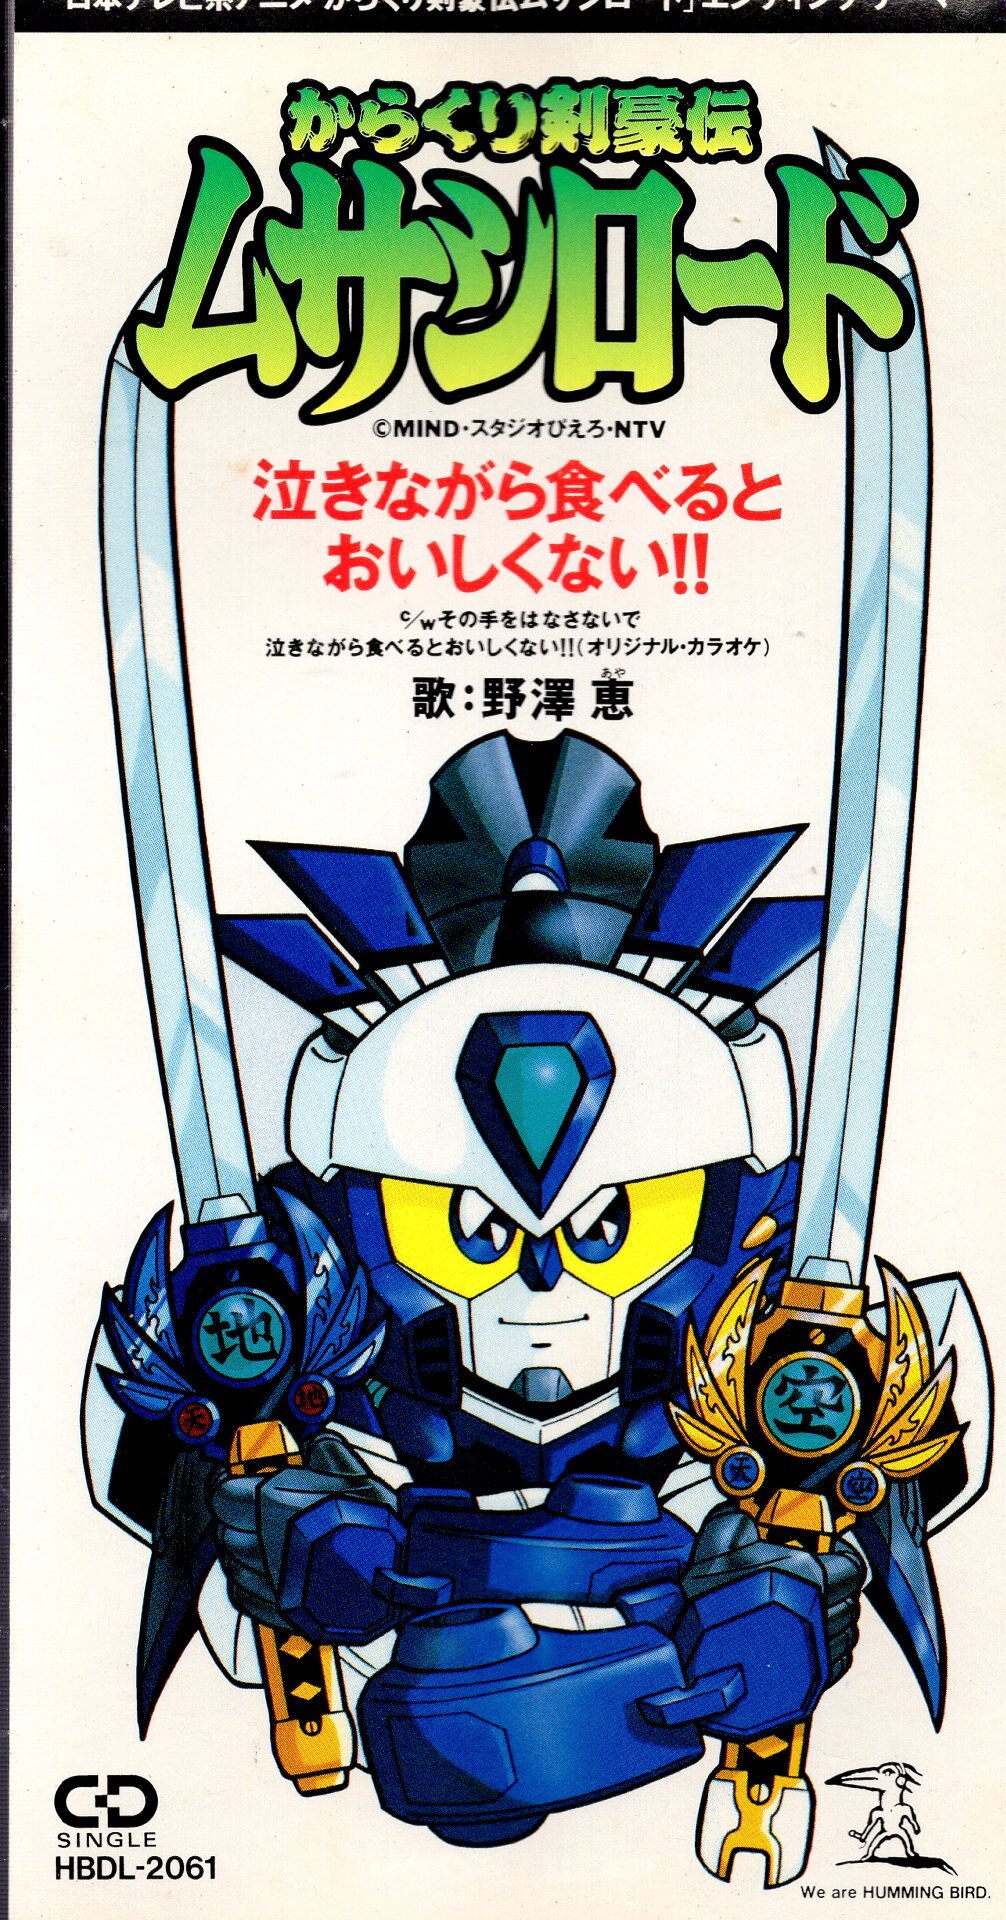 からくり剣豪伝 ムサシロード DVDボックス 前編 90年代アニメ ロボット 